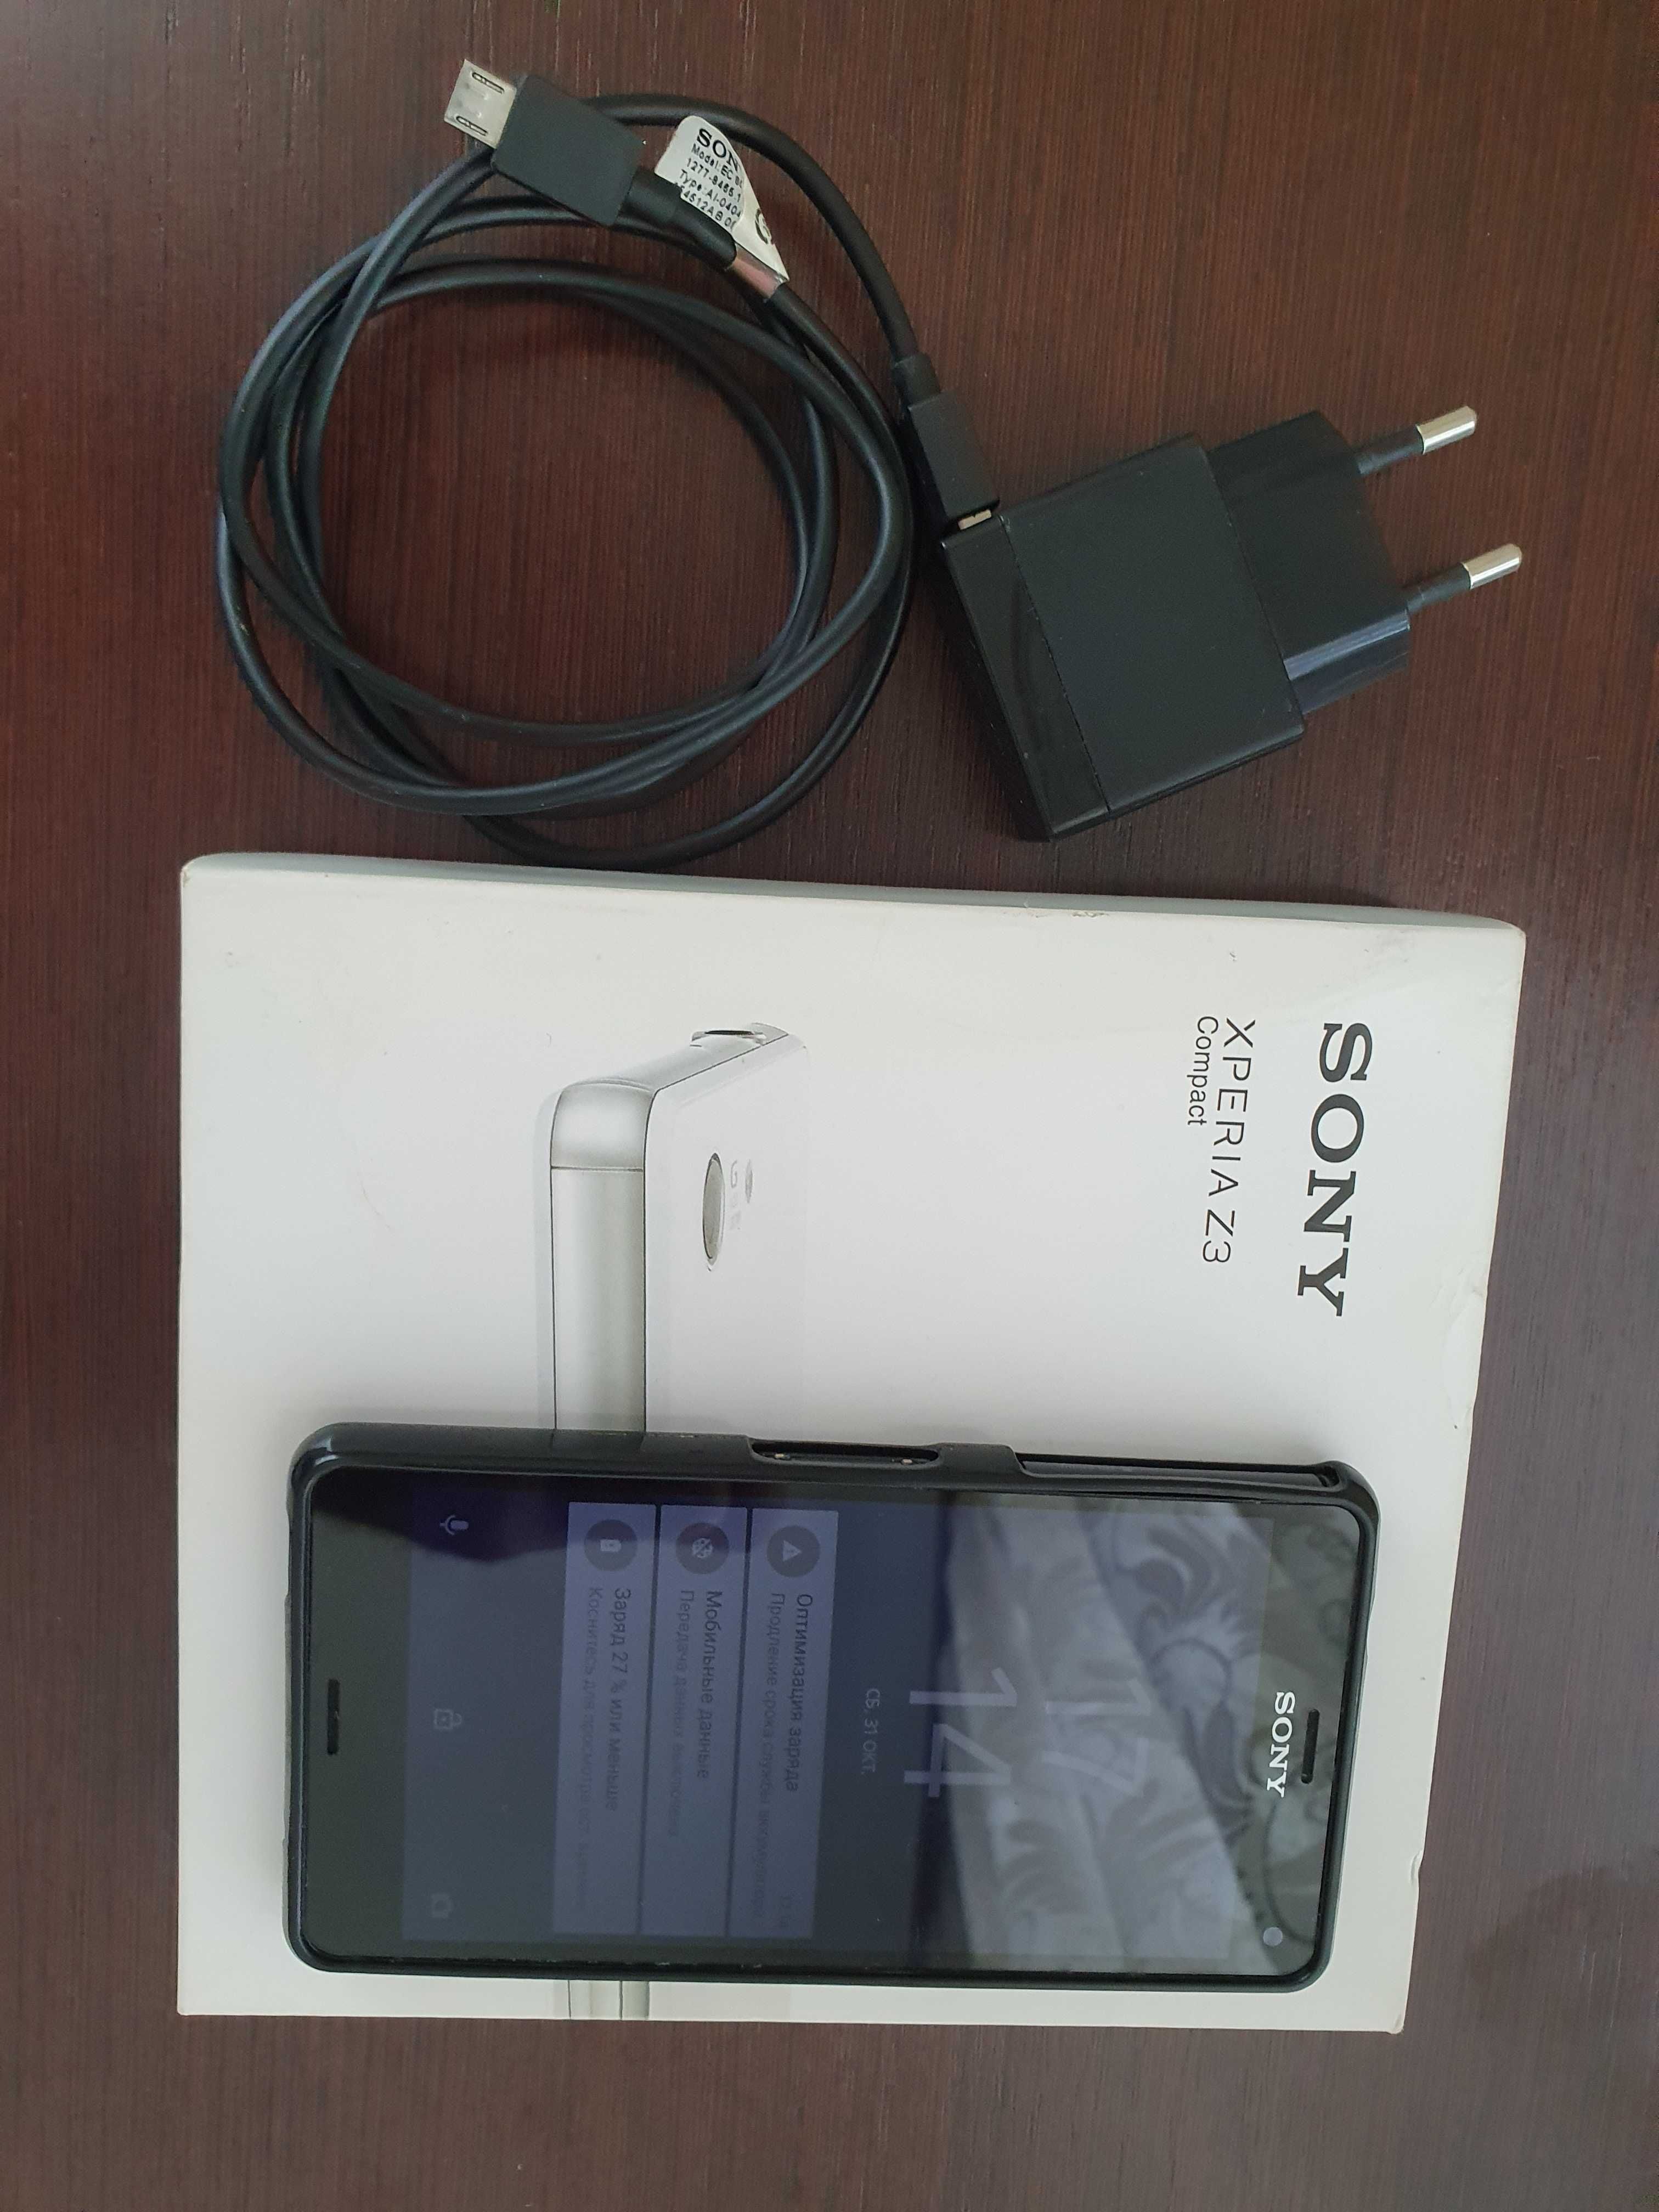 Мобільний телефон Sony Xperia Z3 Compact D5803, black